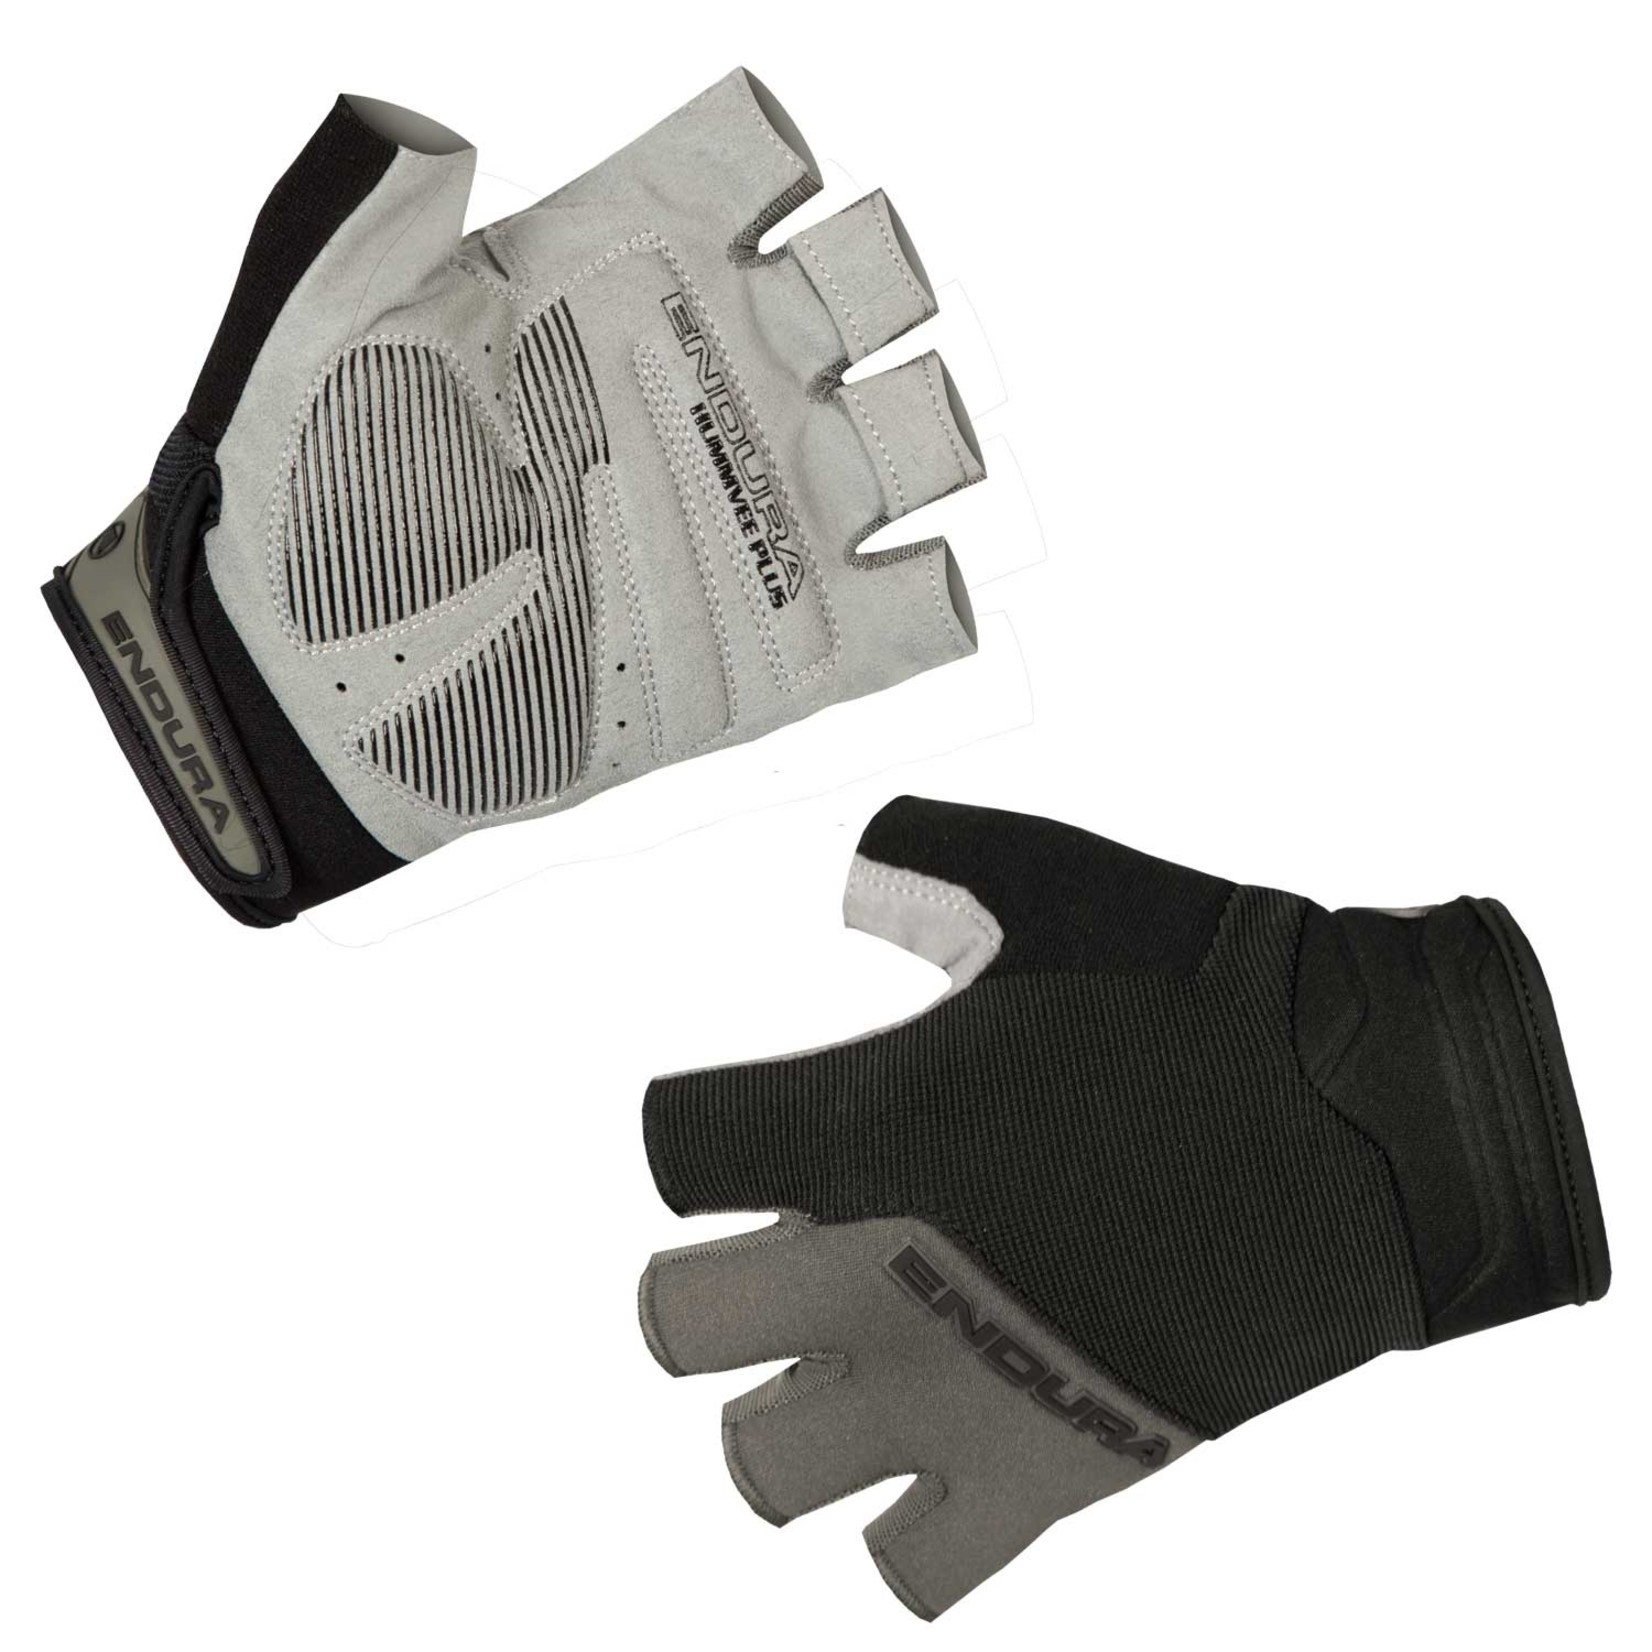 Endura Endura Kids Hummvee Plus Mitt Glove - Black Multi-Use Protection